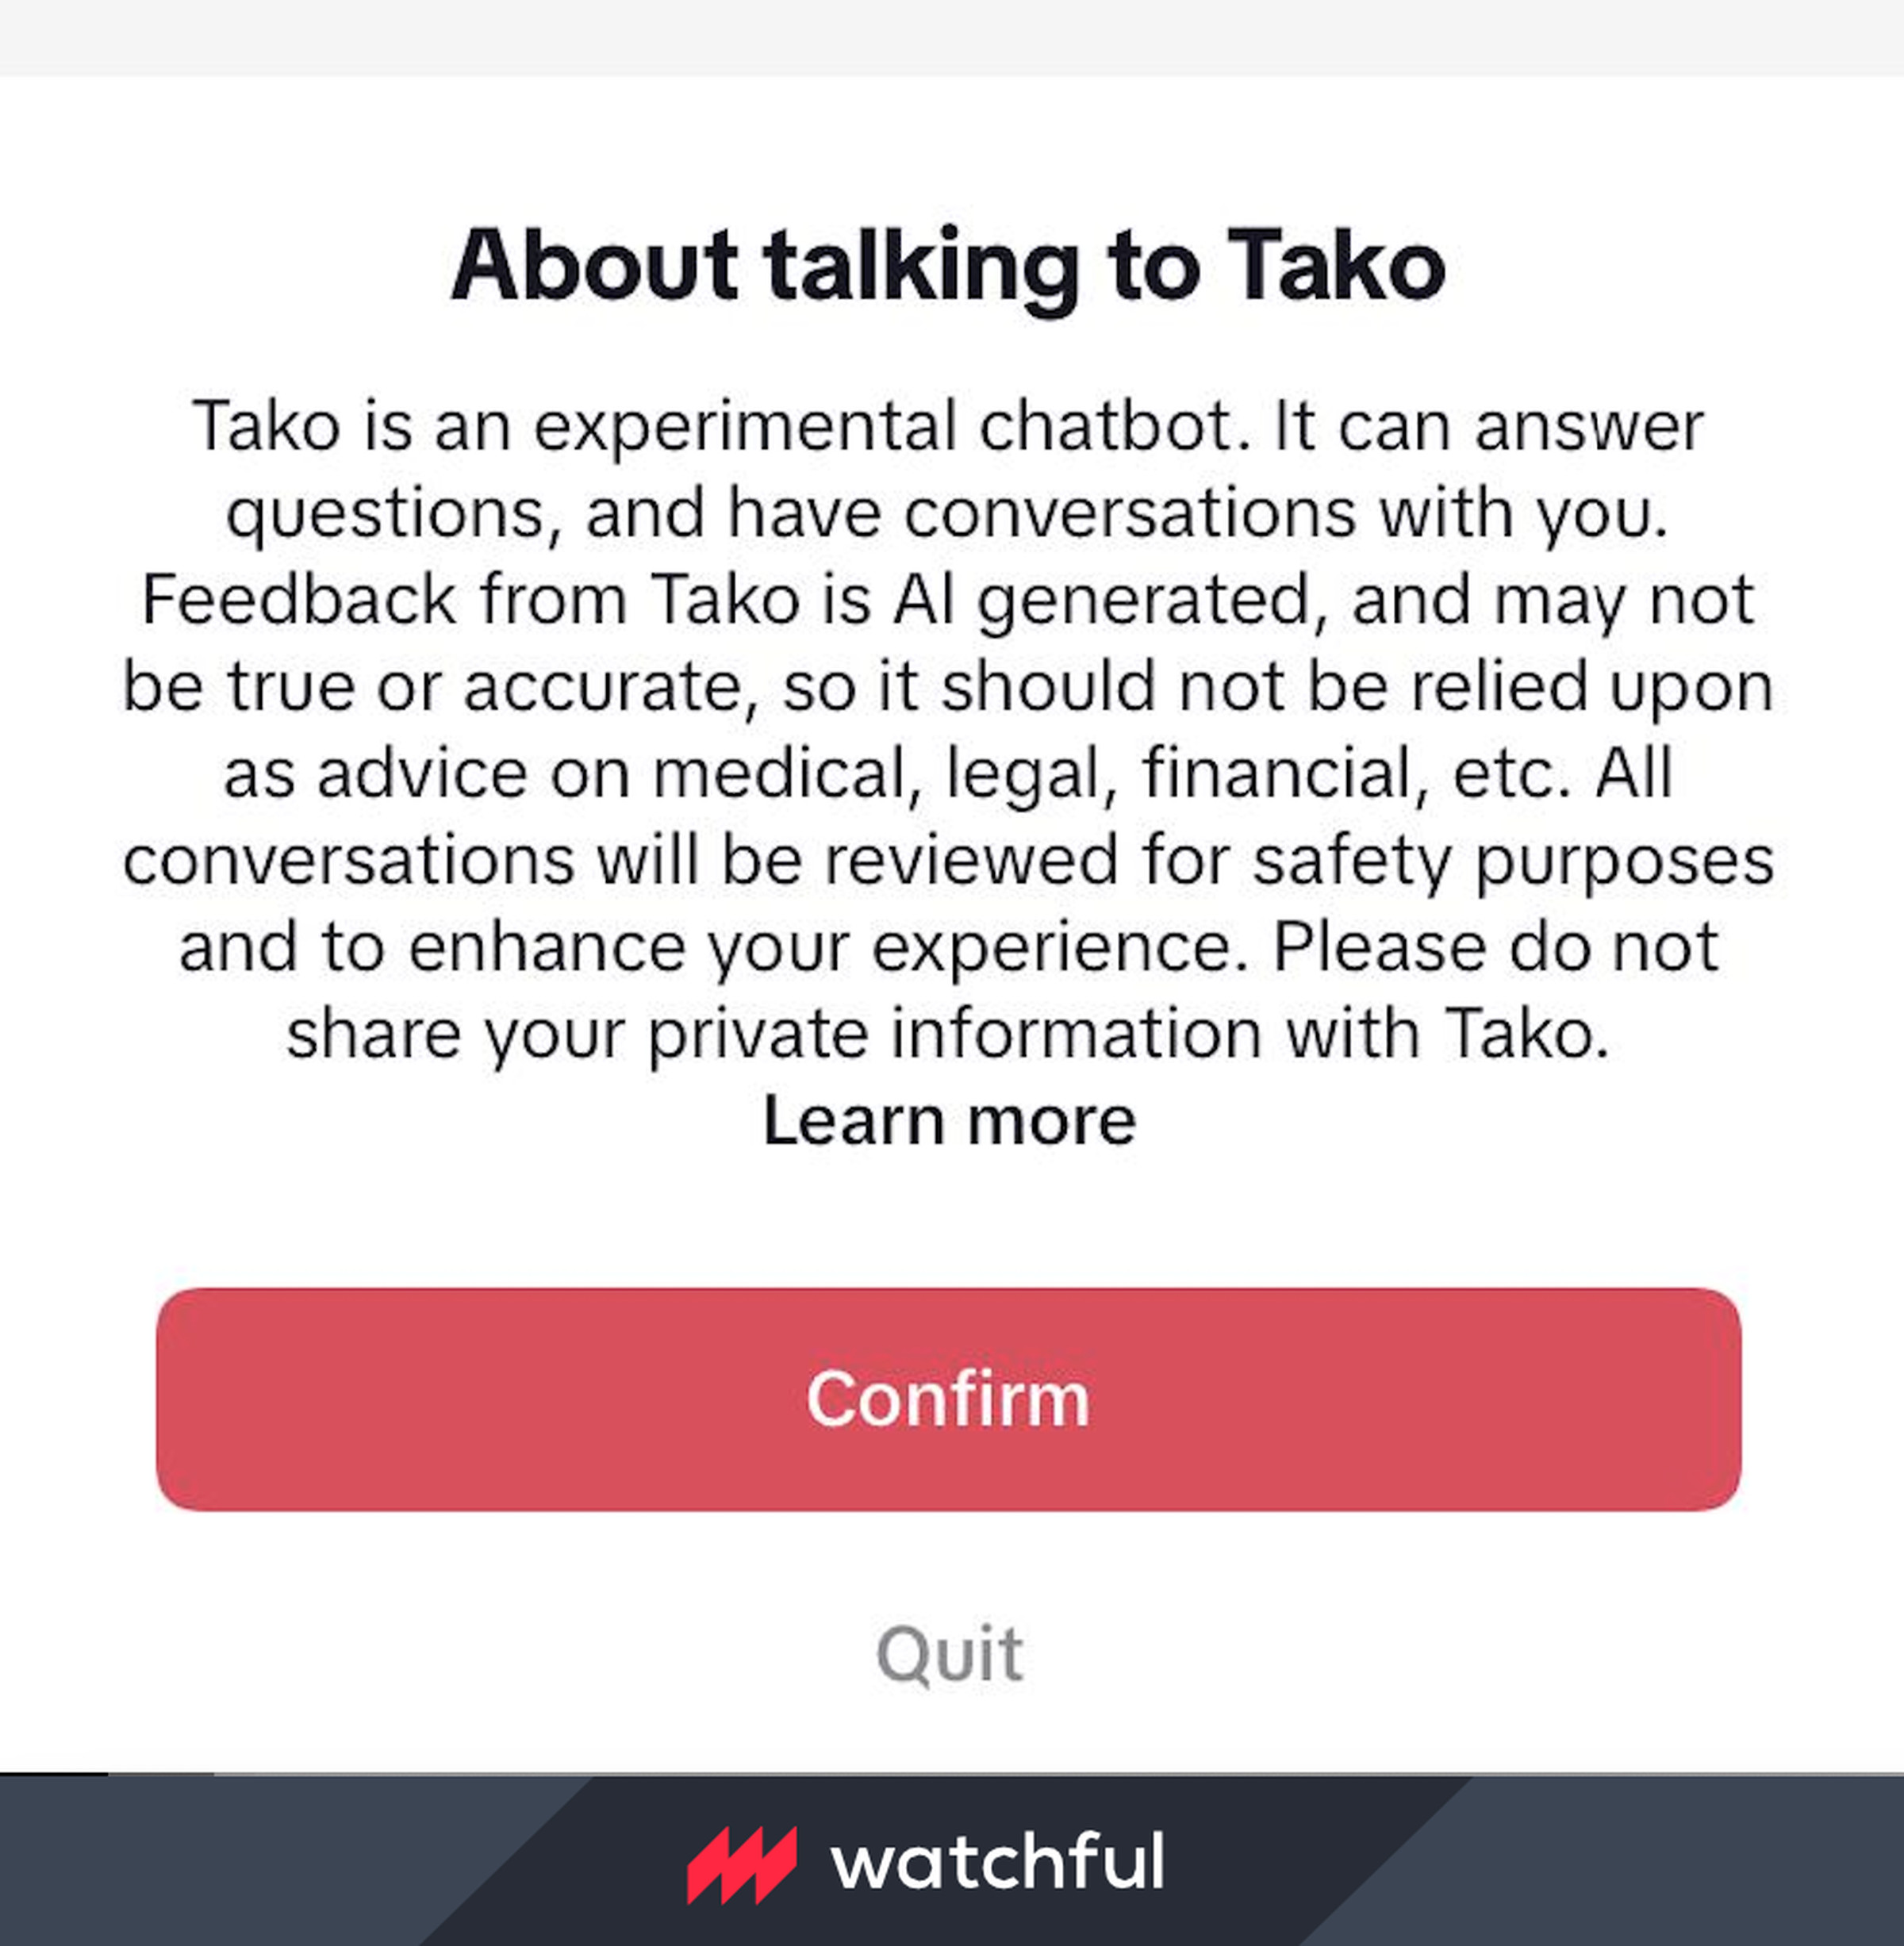 TikTok’s initial explanation of how Tako works.